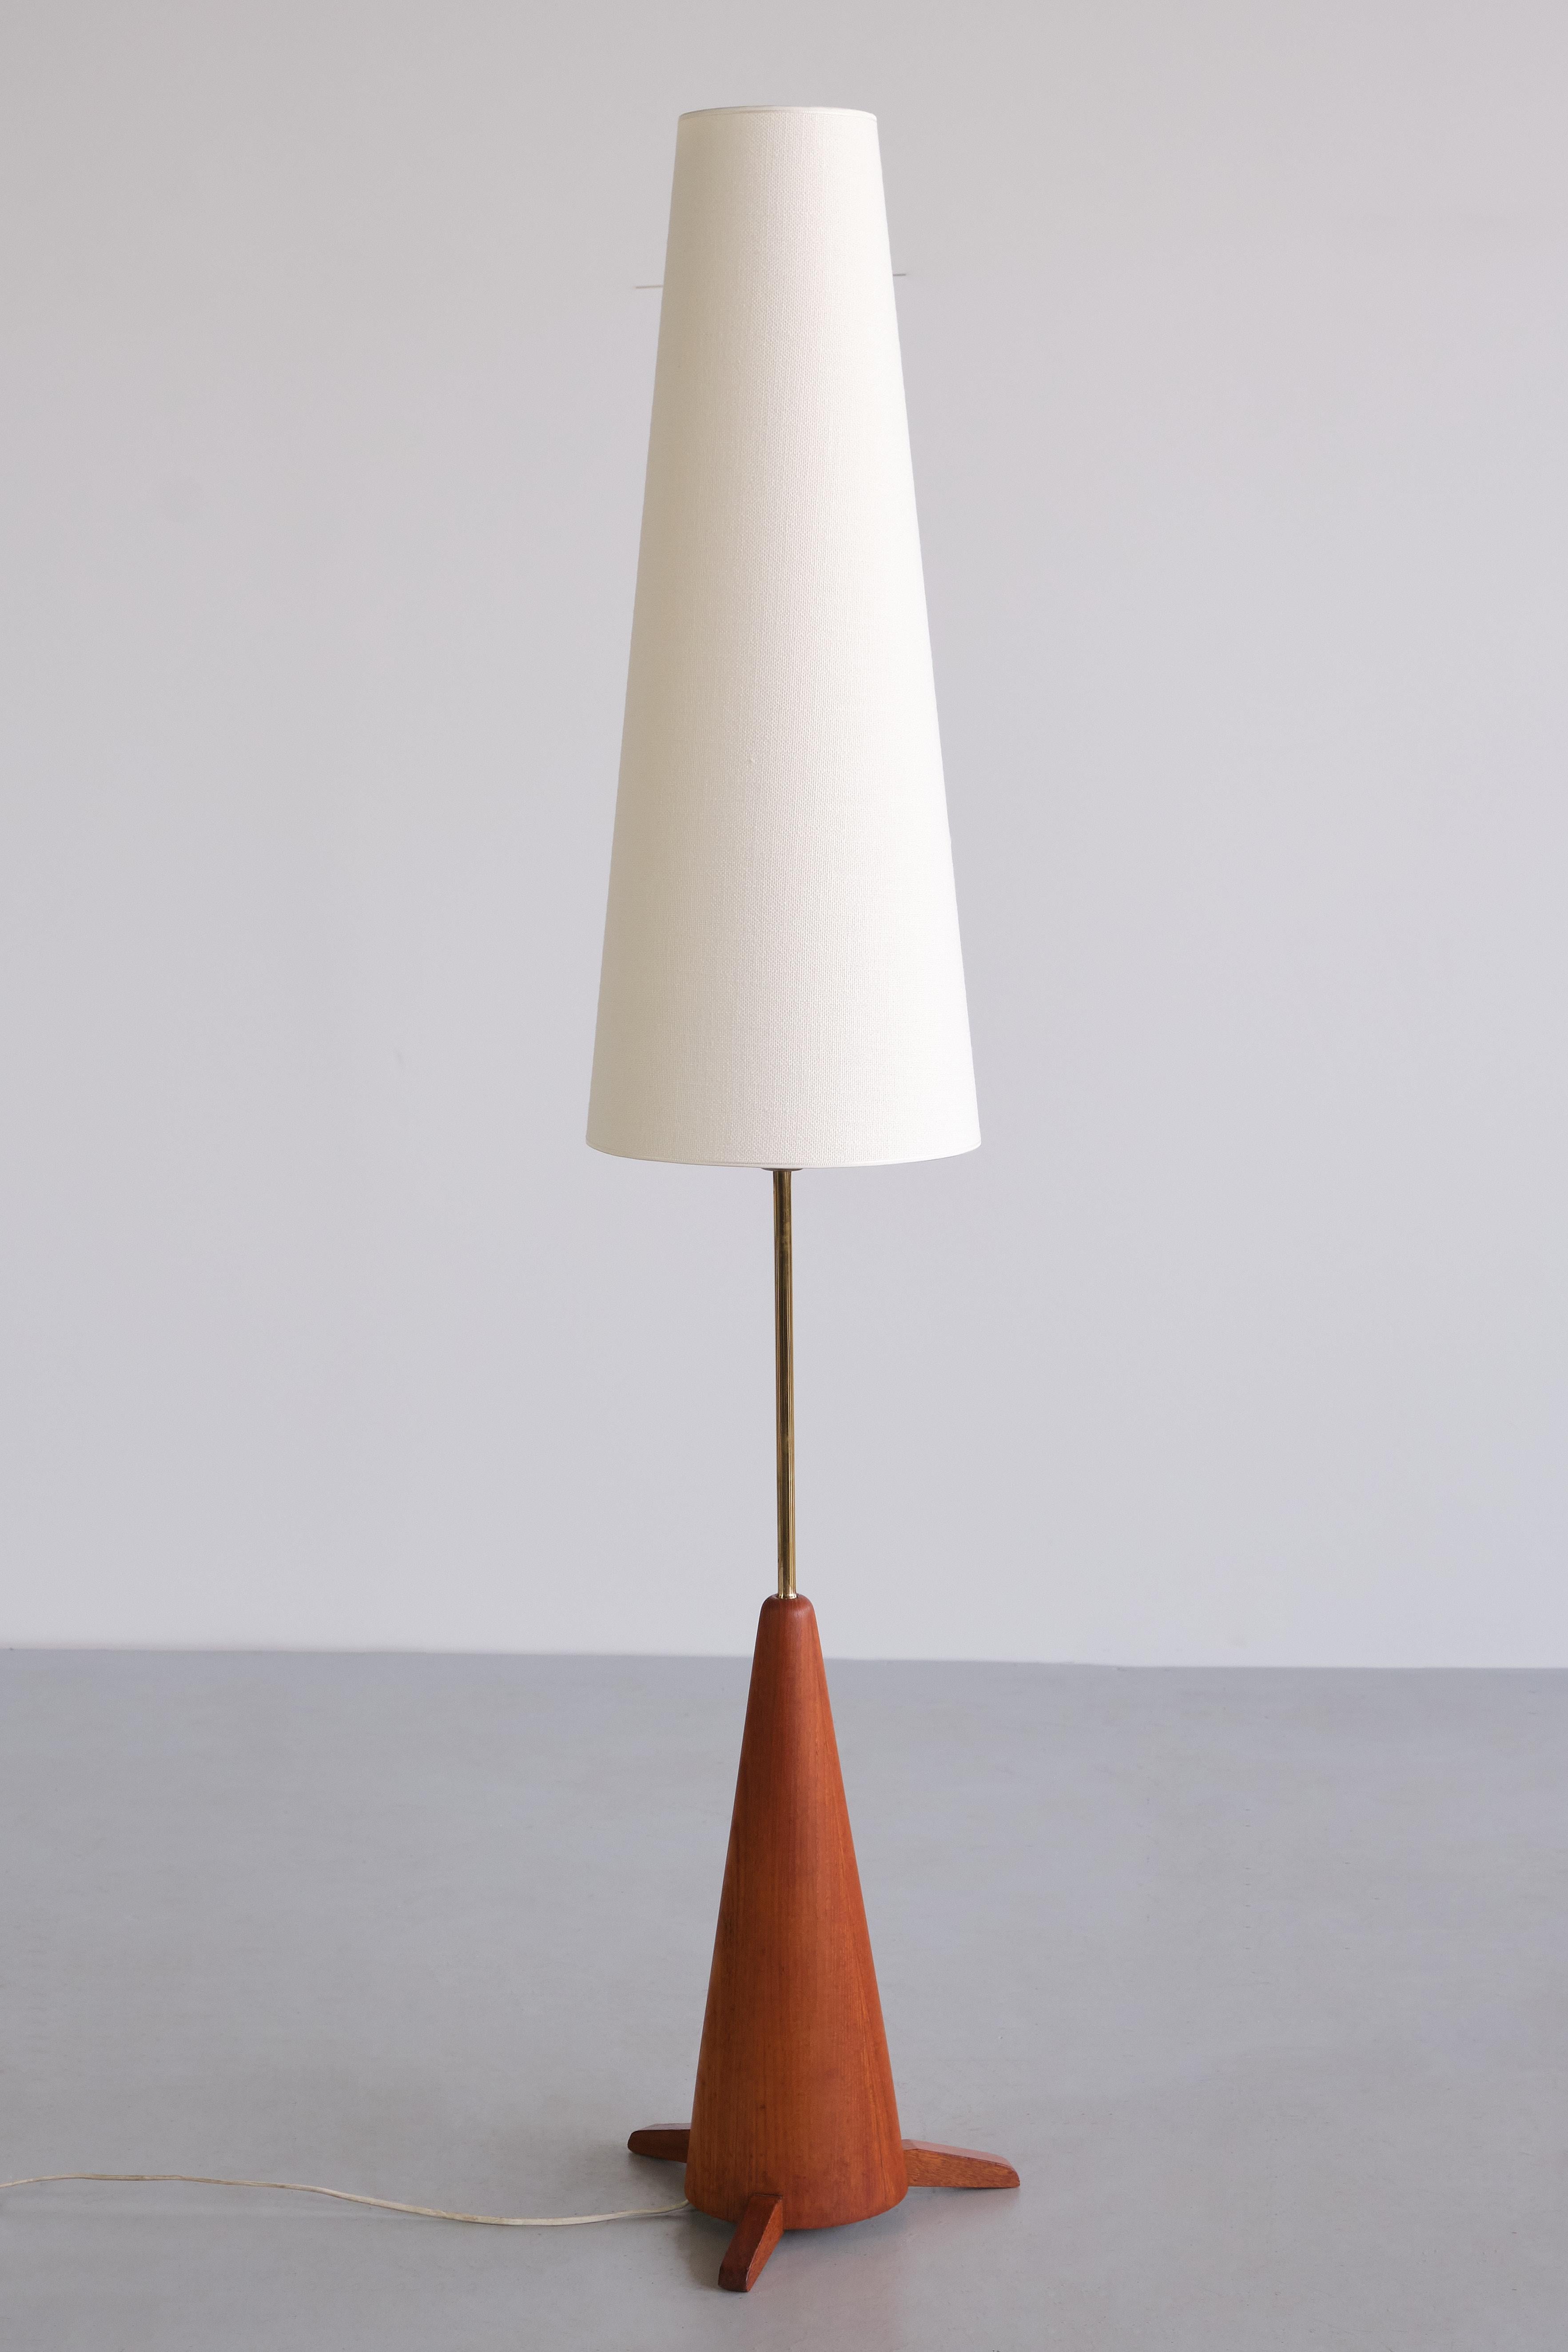 Ce rare lampadaire a été produit par Möllers Armaturfabrik à Eskiltuna, en Suède, dans les années 1950. Le modèle est numéroté 86 et la lampe est marquée 